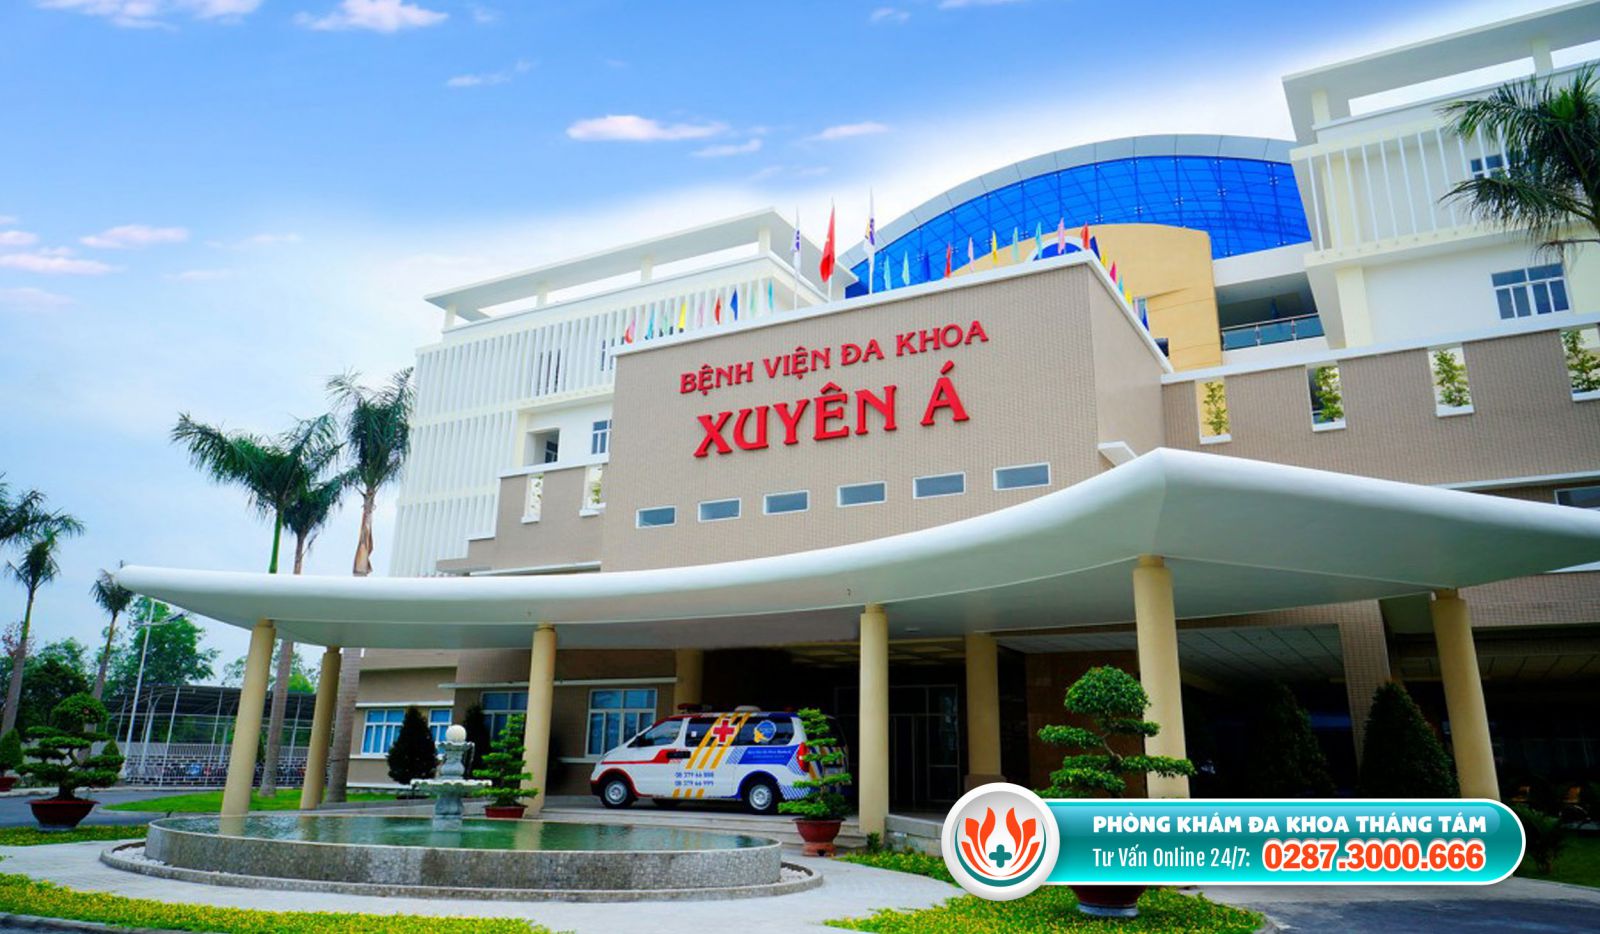 Bệnh viện Đa khoa Xuyên Á là địa chỉ khám nam khoa đáng tin cậy